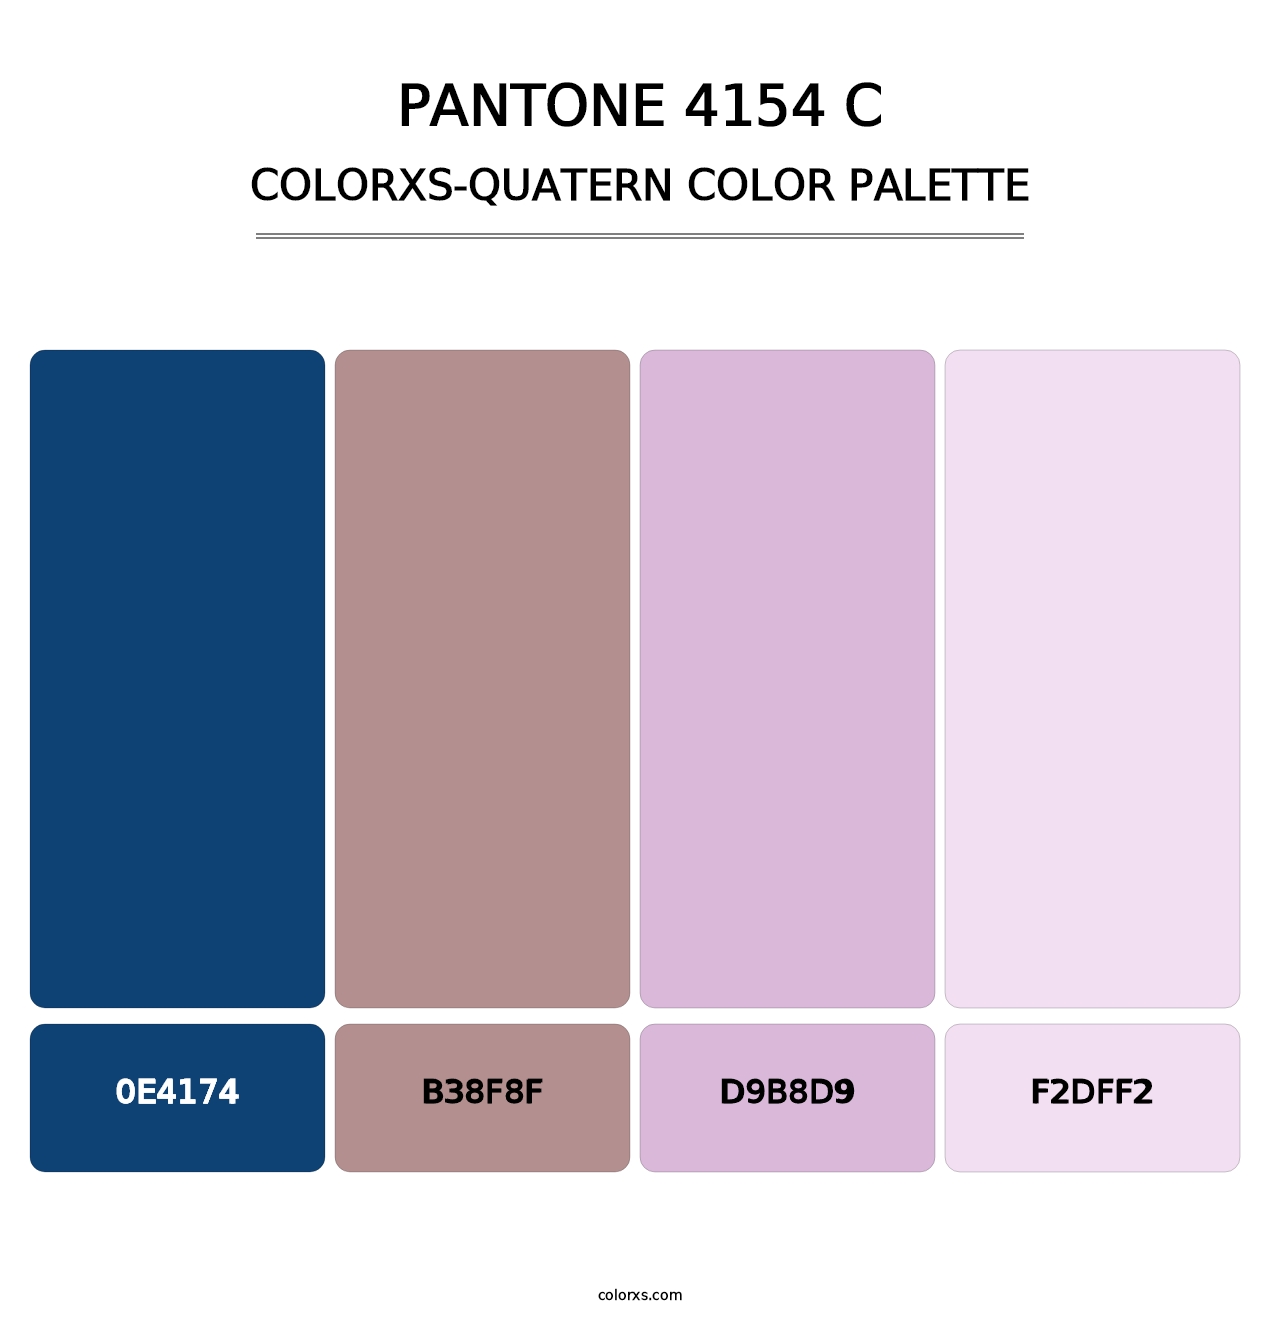 PANTONE 4154 C - Colorxs Quatern Palette